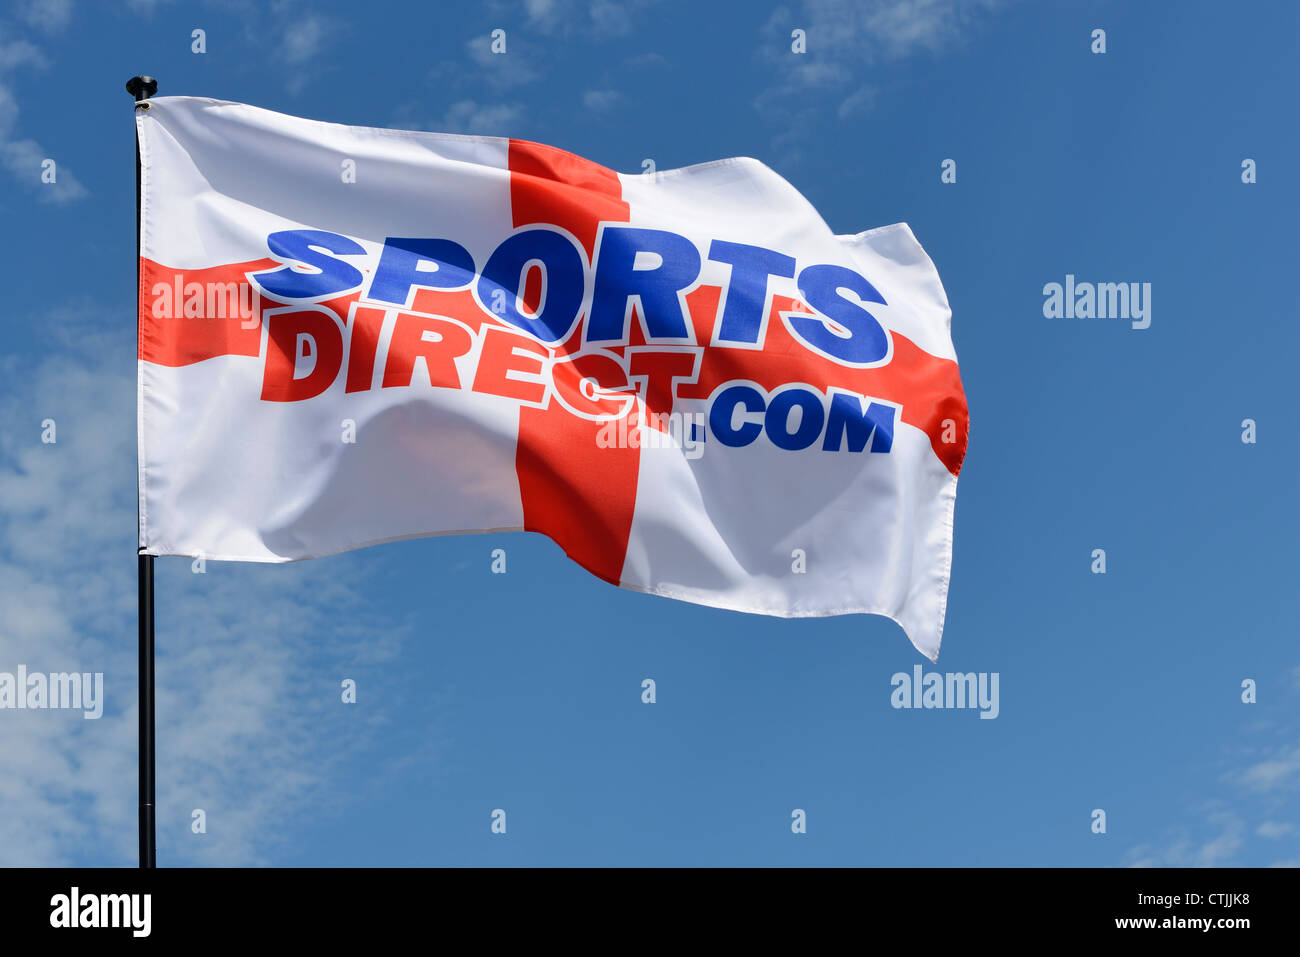 Sports direct immagini e fotografie stock ad alta risoluzione - Alamy